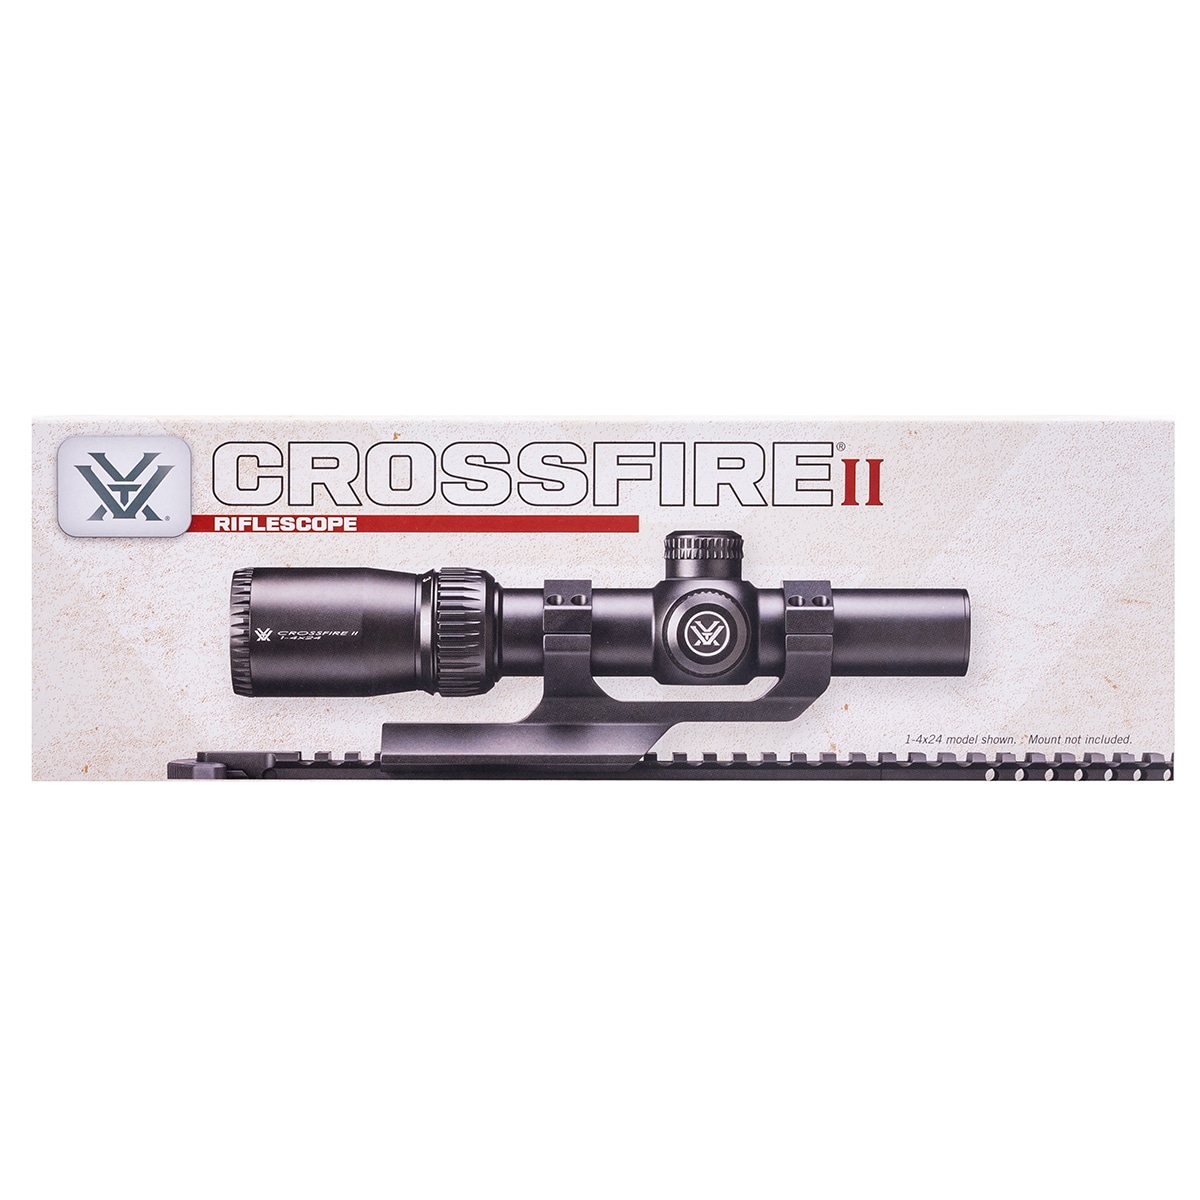 Luneta celownicza Vortex Crossfire II 1-4x24